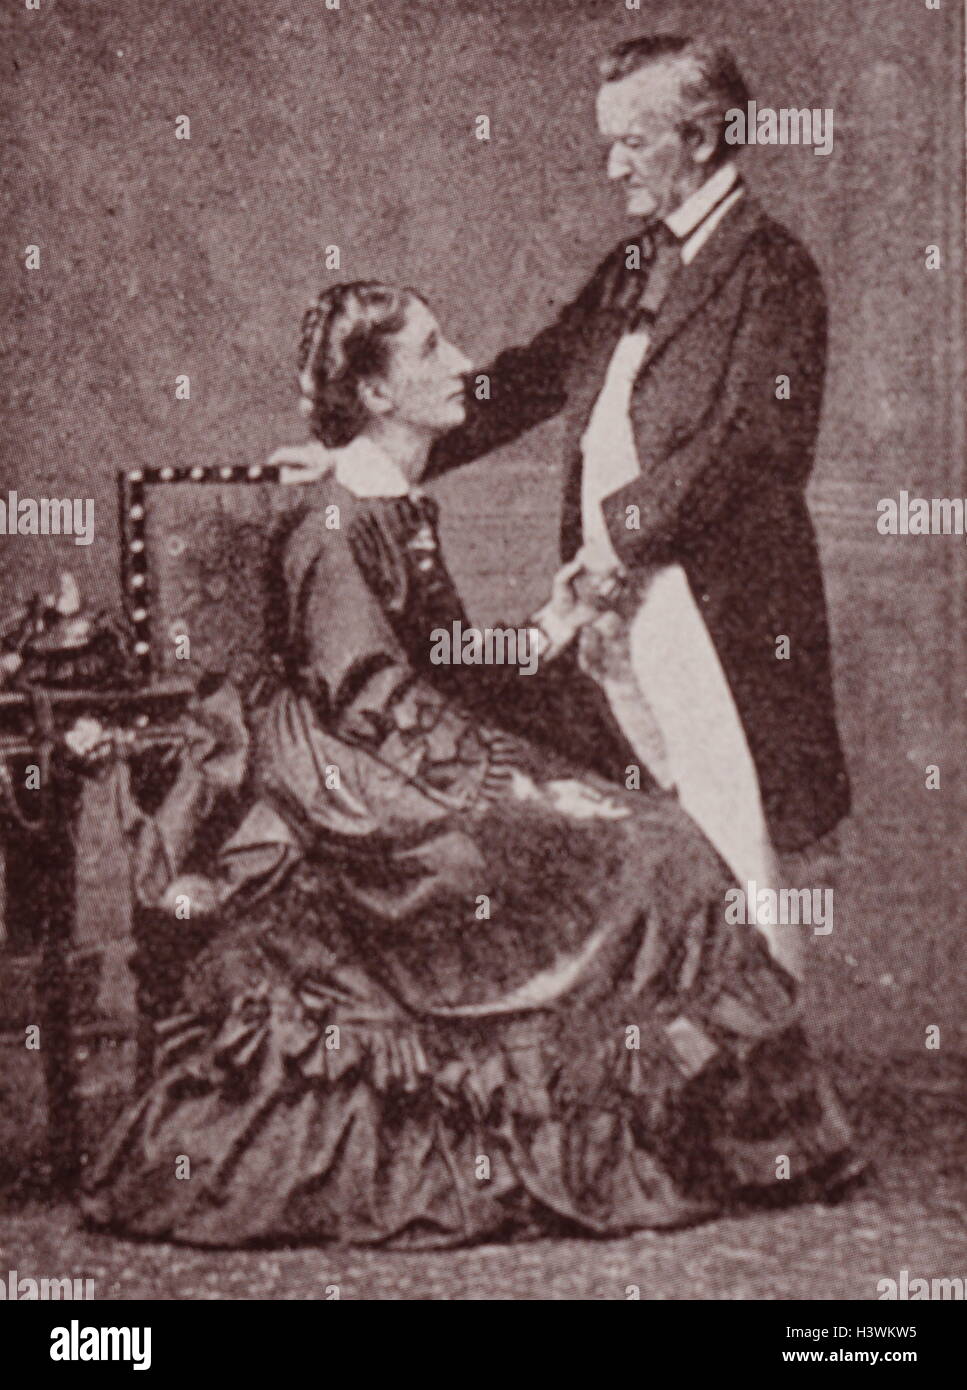 Ritratto di Richard Wagner (1813-1883) un compositore tedesco, direttore del teatro, polemista e conduttore, e sua moglie Cosima Wagner (1837-1930) datata del XIX secolo Foto Stock